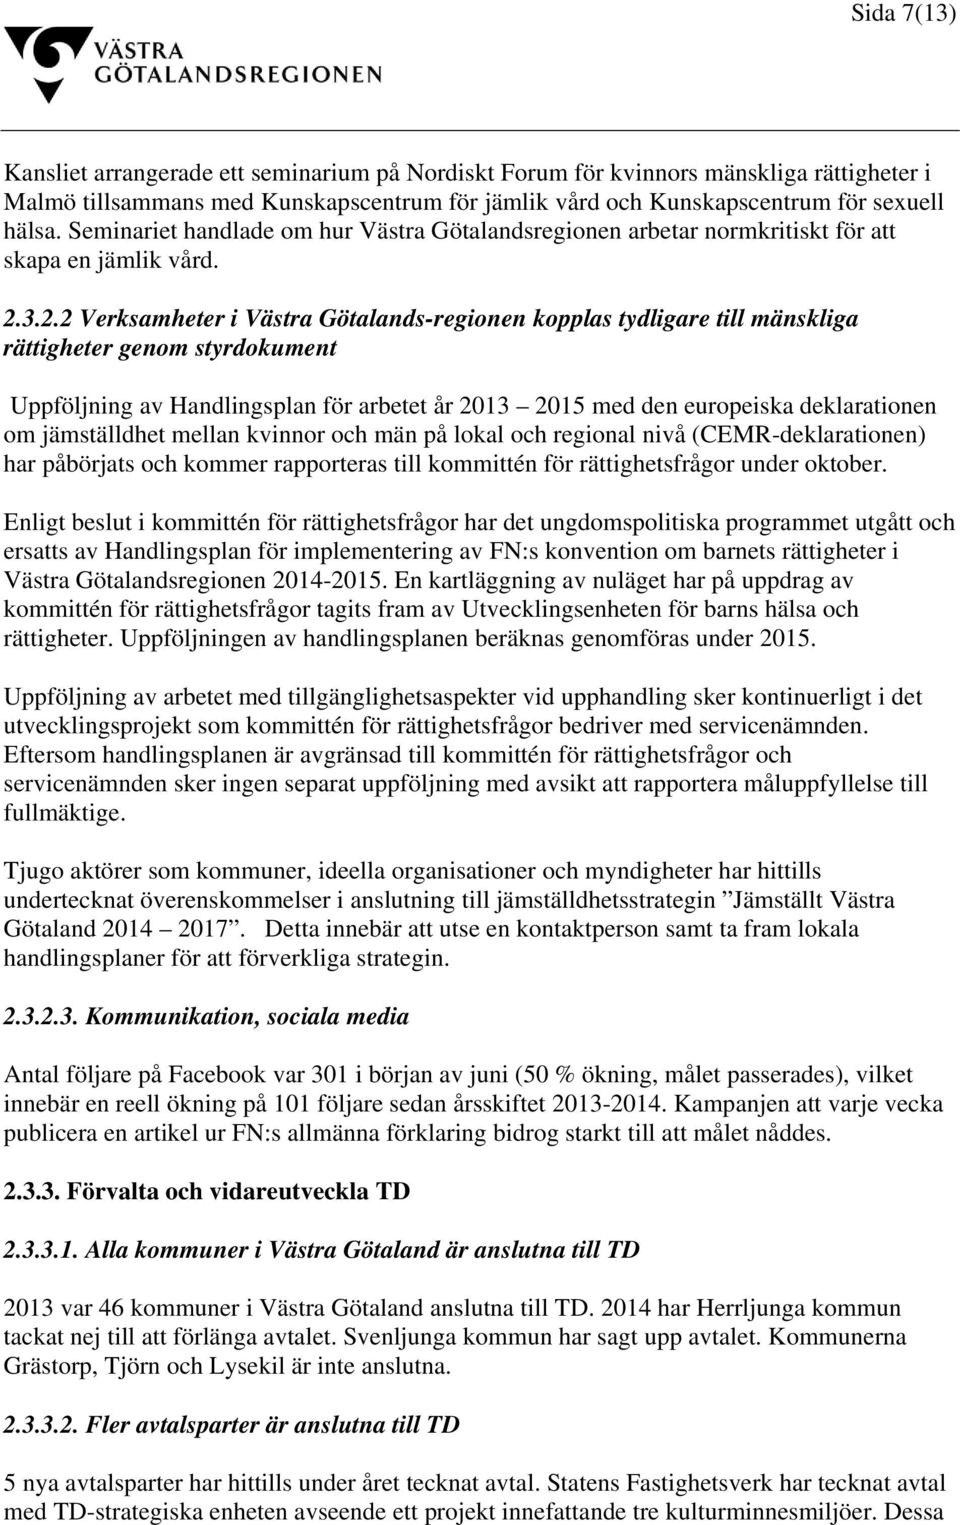 3.2.2 Verksamheter i Västra Götalands-regionen kopplas tydligare till mänskliga rättigheter genom styrdokument Uppföljning av Handlingsplan för arbetet år 2013 2015 med den europeiska deklarationen